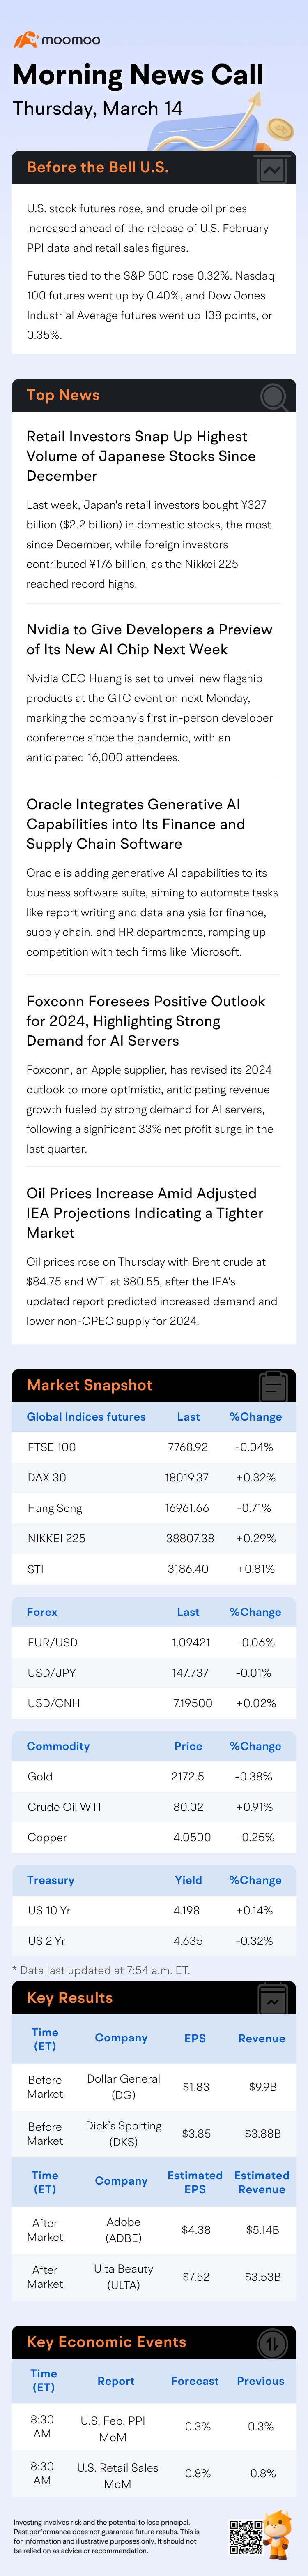 コール：米国株先物と原油価格がPPIデータ発表前に上昇